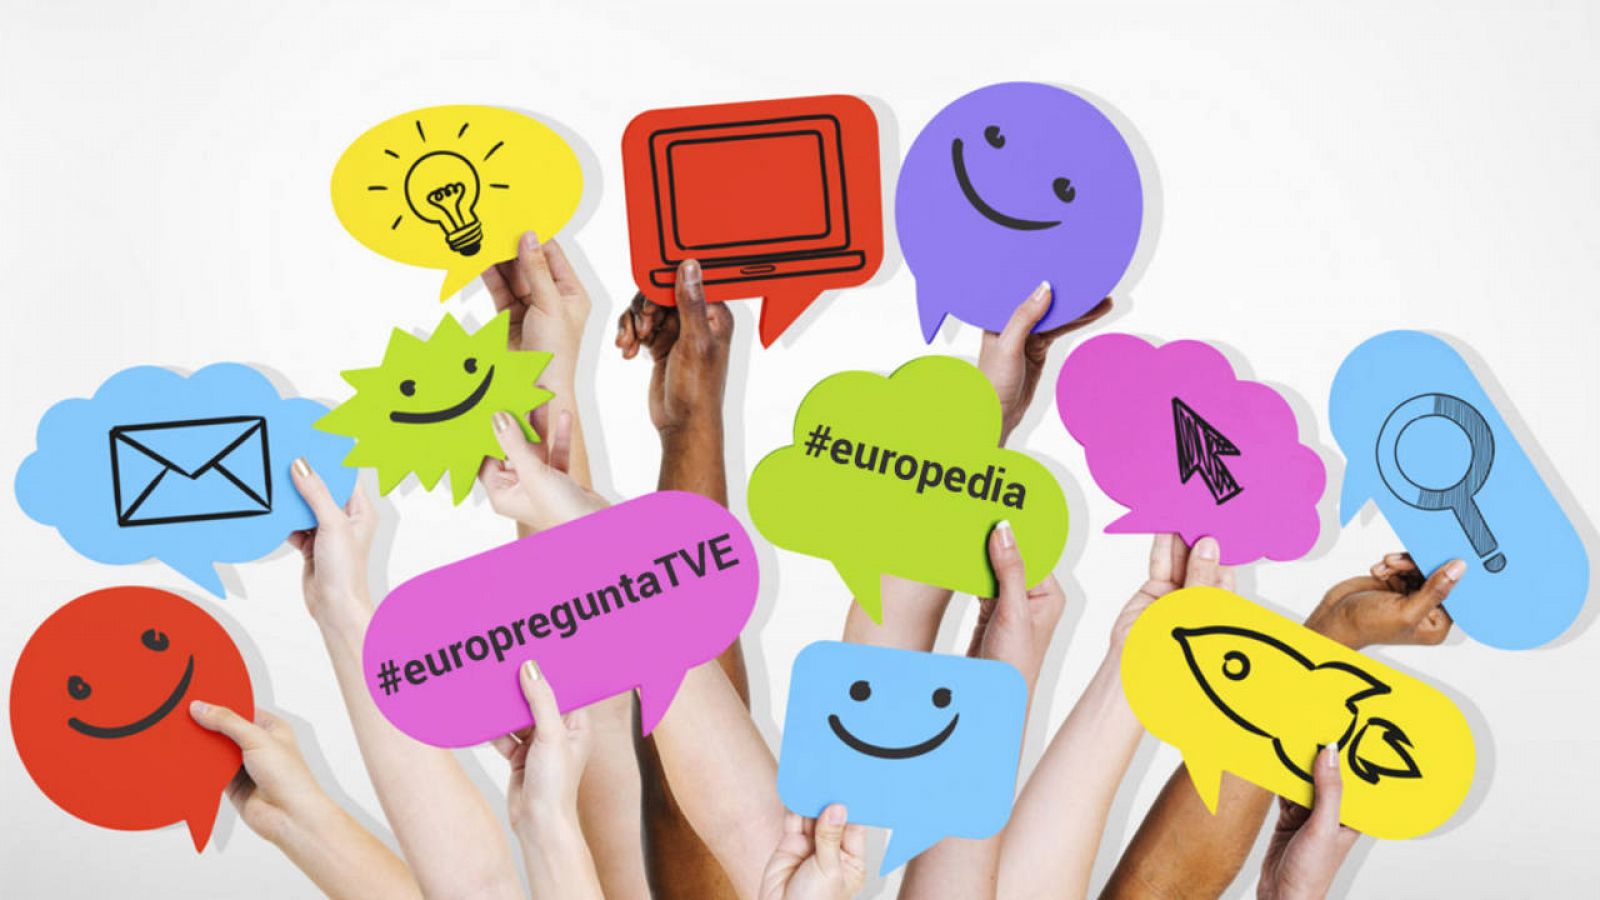 #europreguntaTVE y #europedia, ¡envía tu vídeo!